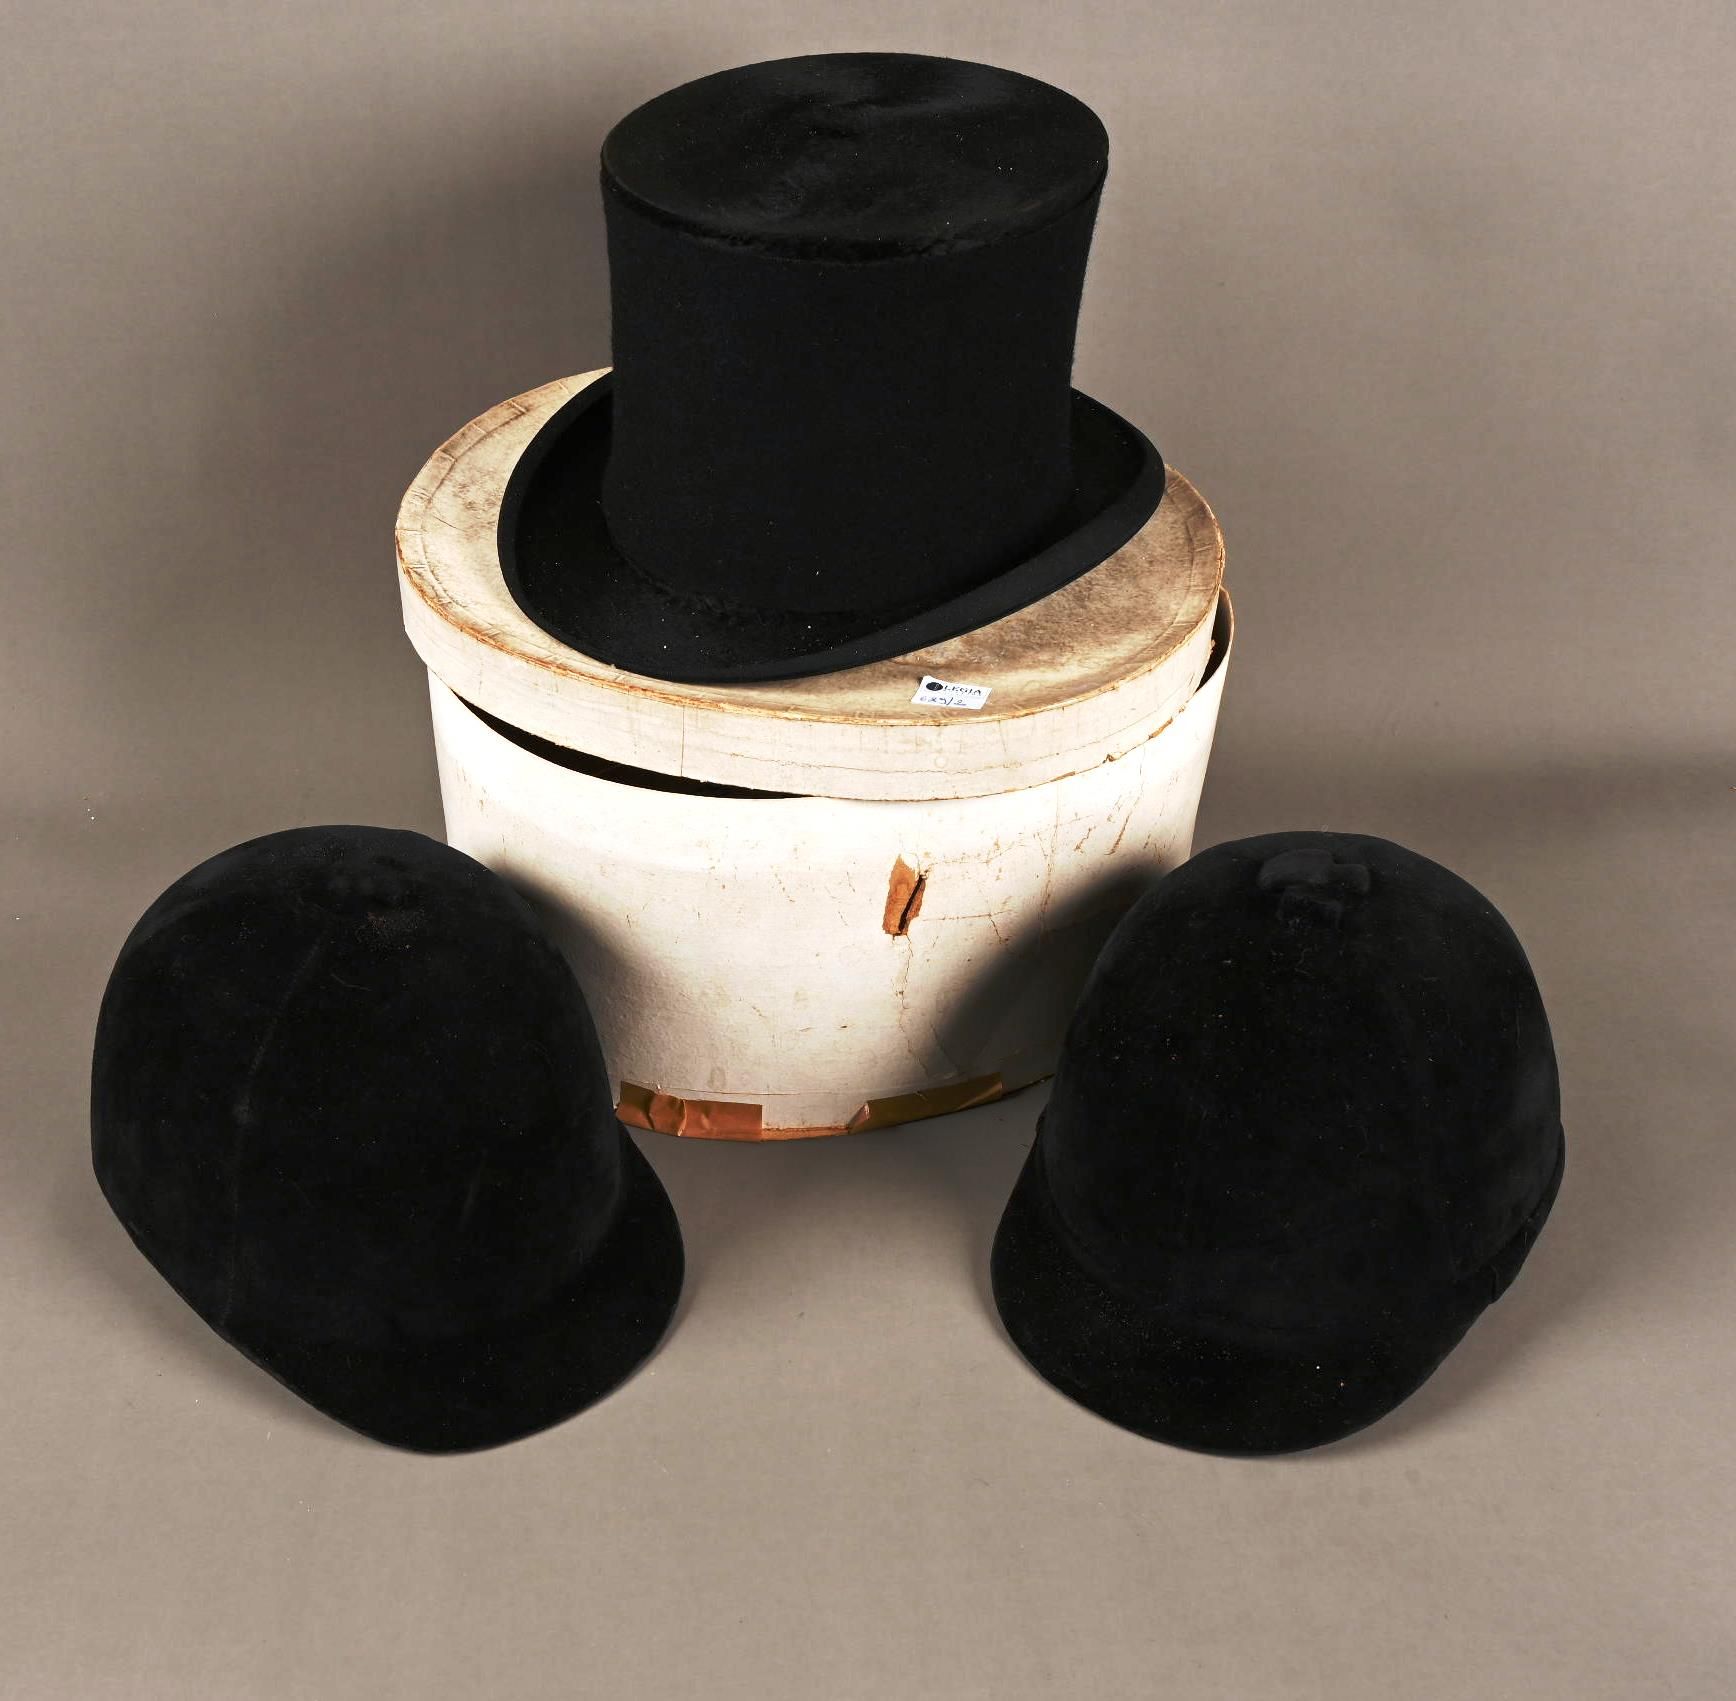 Boîte à chapeau avec haut de forme. 带高帽的帽盒。

附有两枚骑马弹。